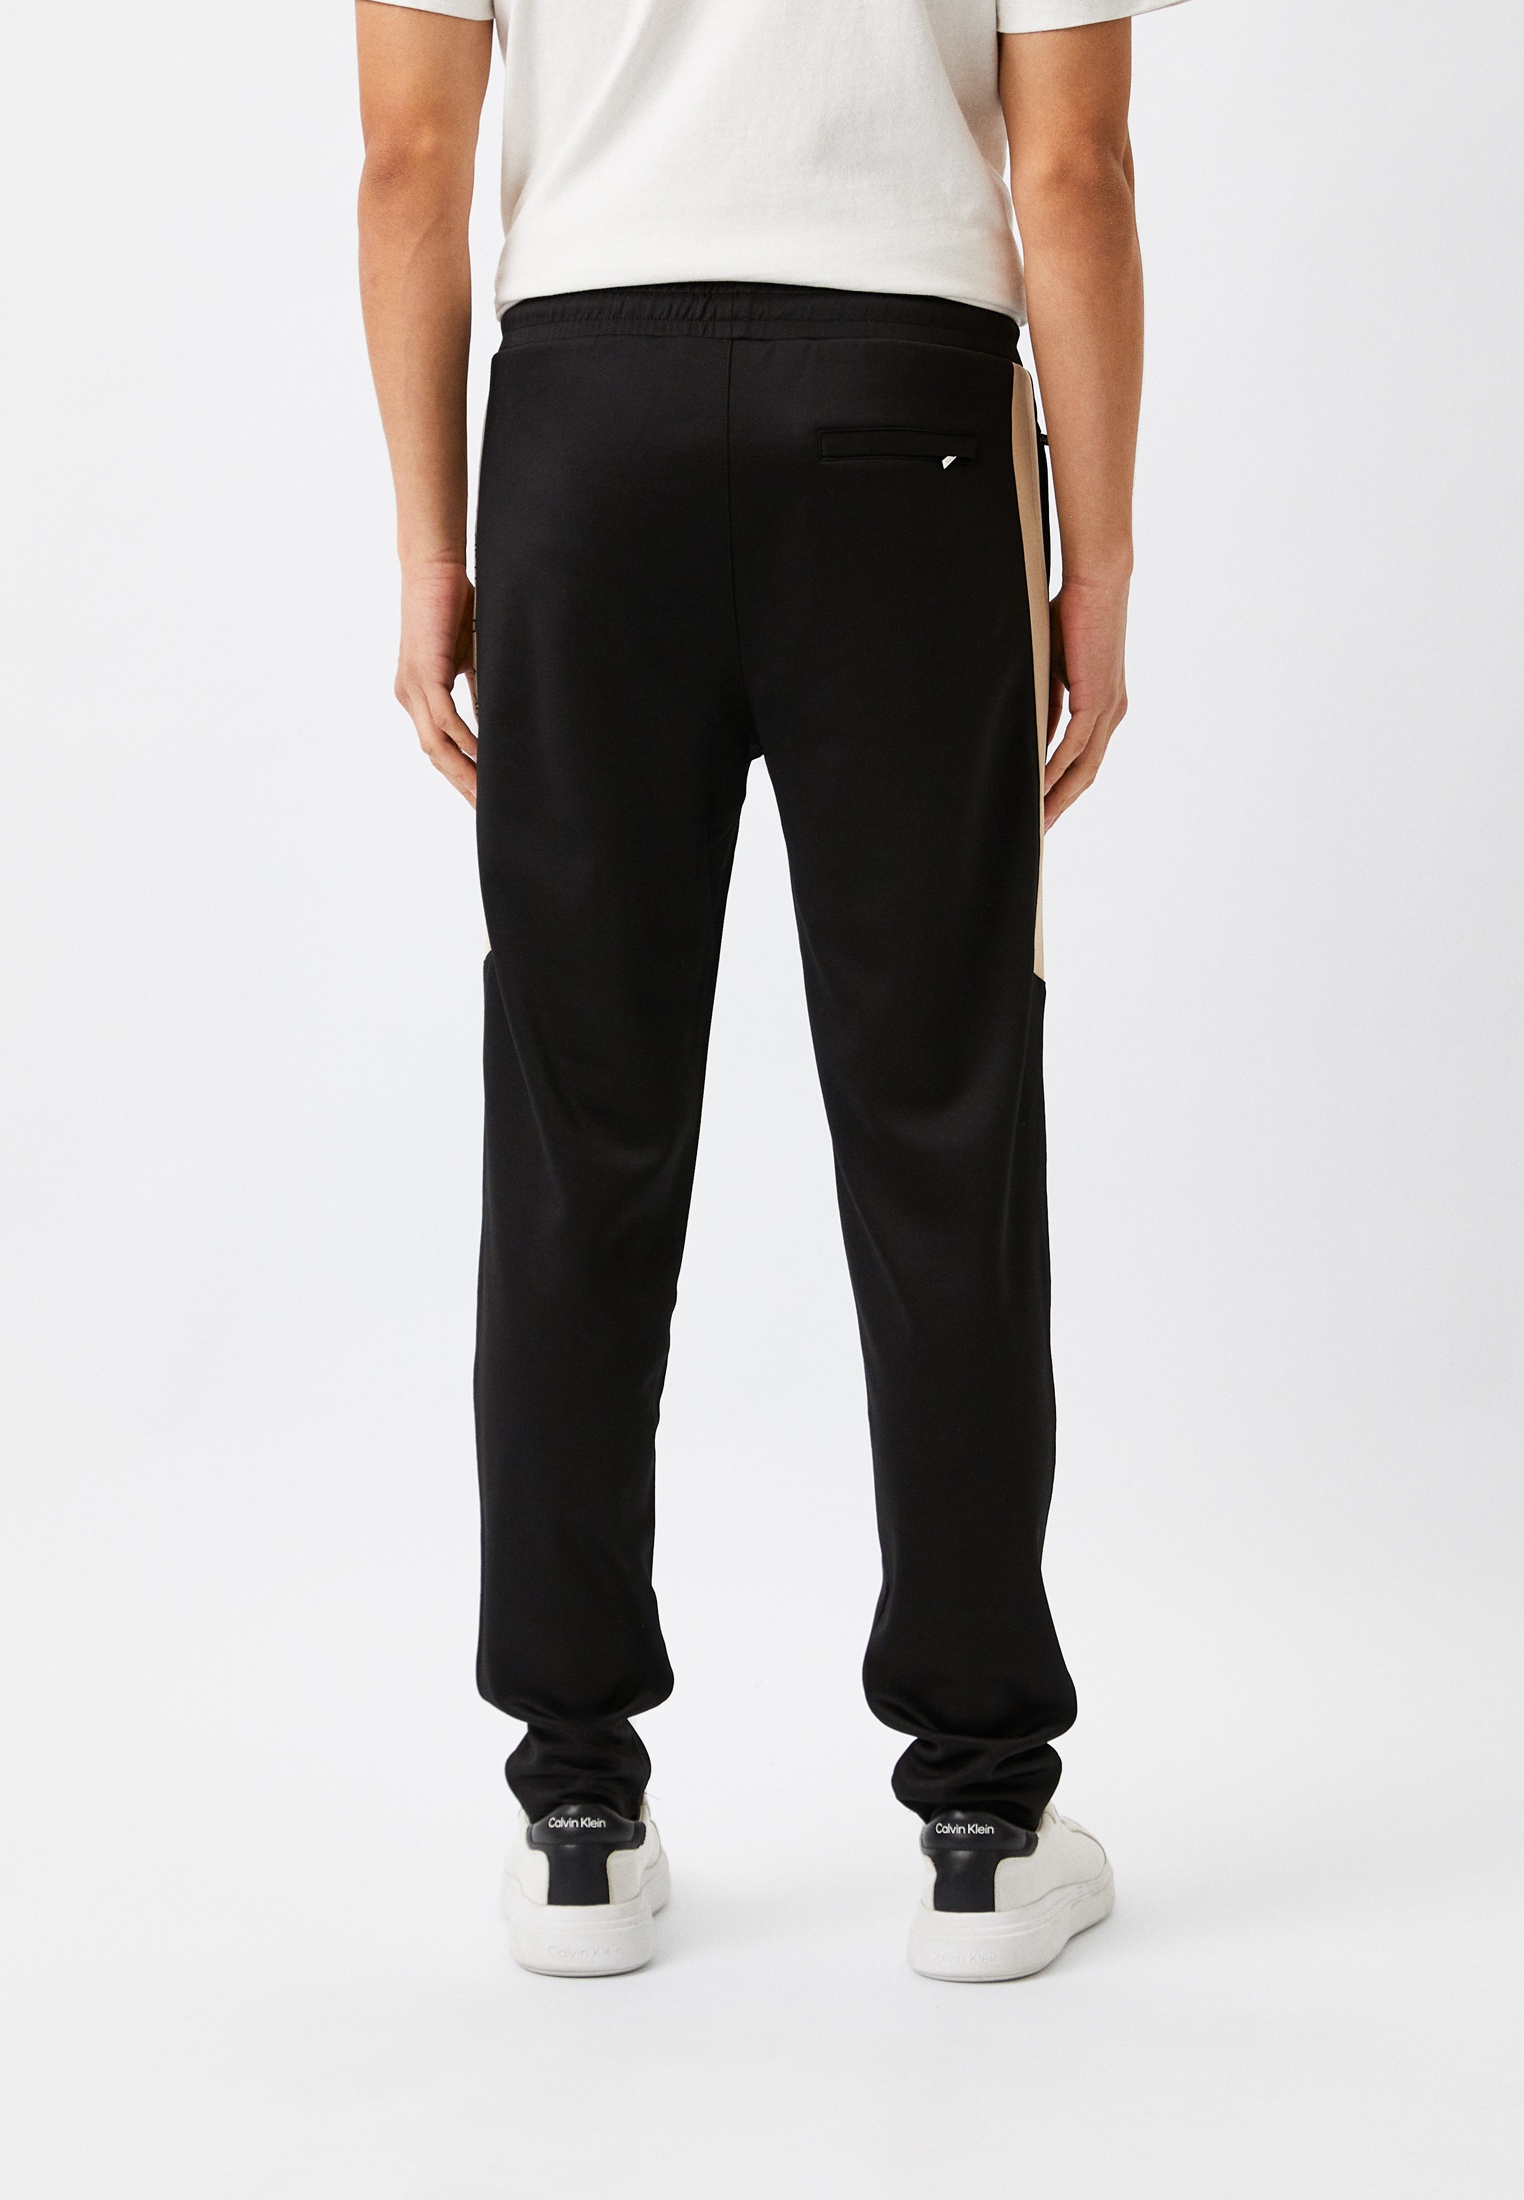 Мужские спортивные брюки Karl Lagerfeld (Карл Лагерфельд) 705065-533905: изображение 3